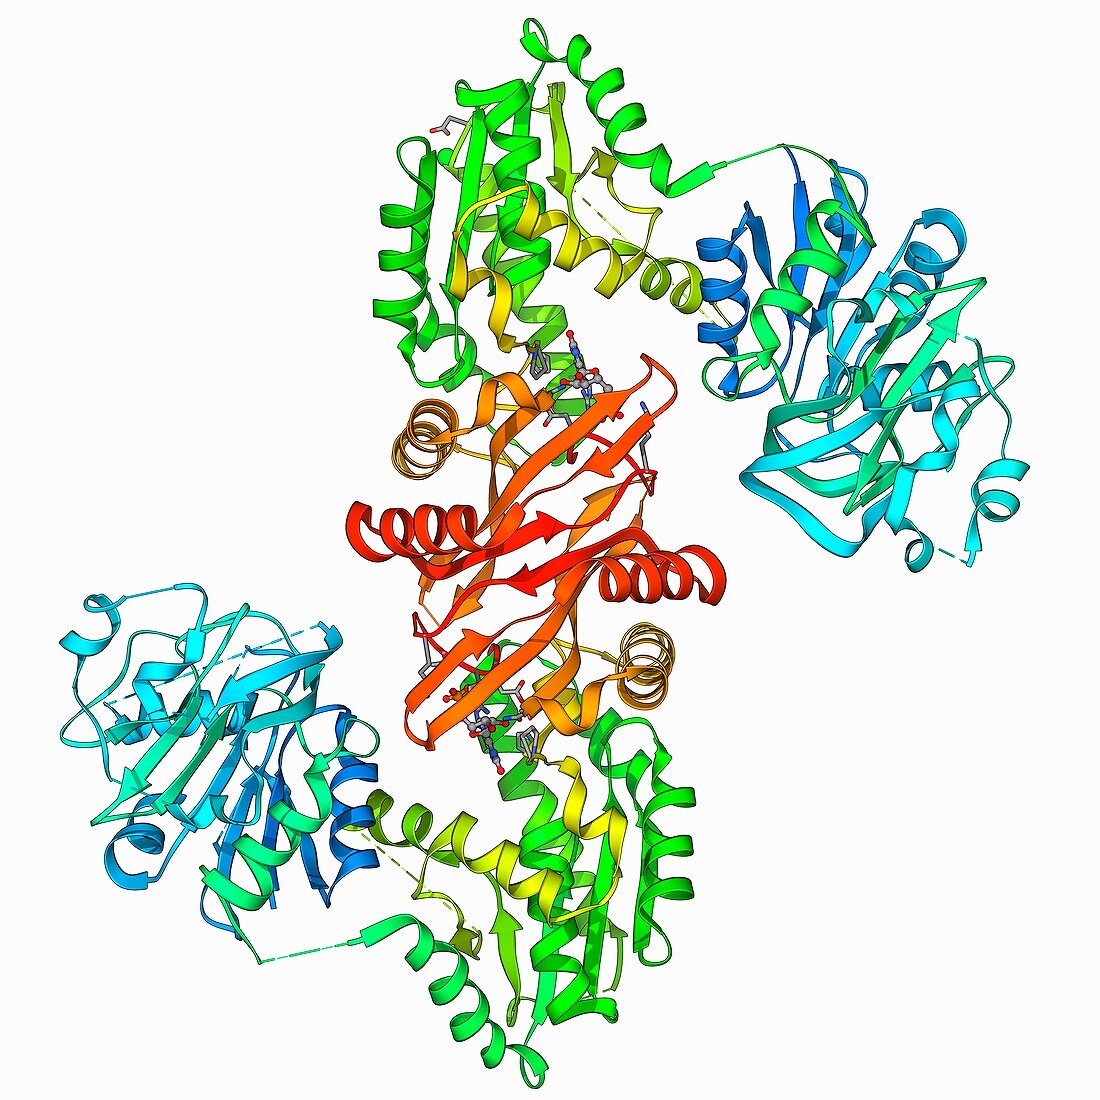 GMP synthetase enzyme